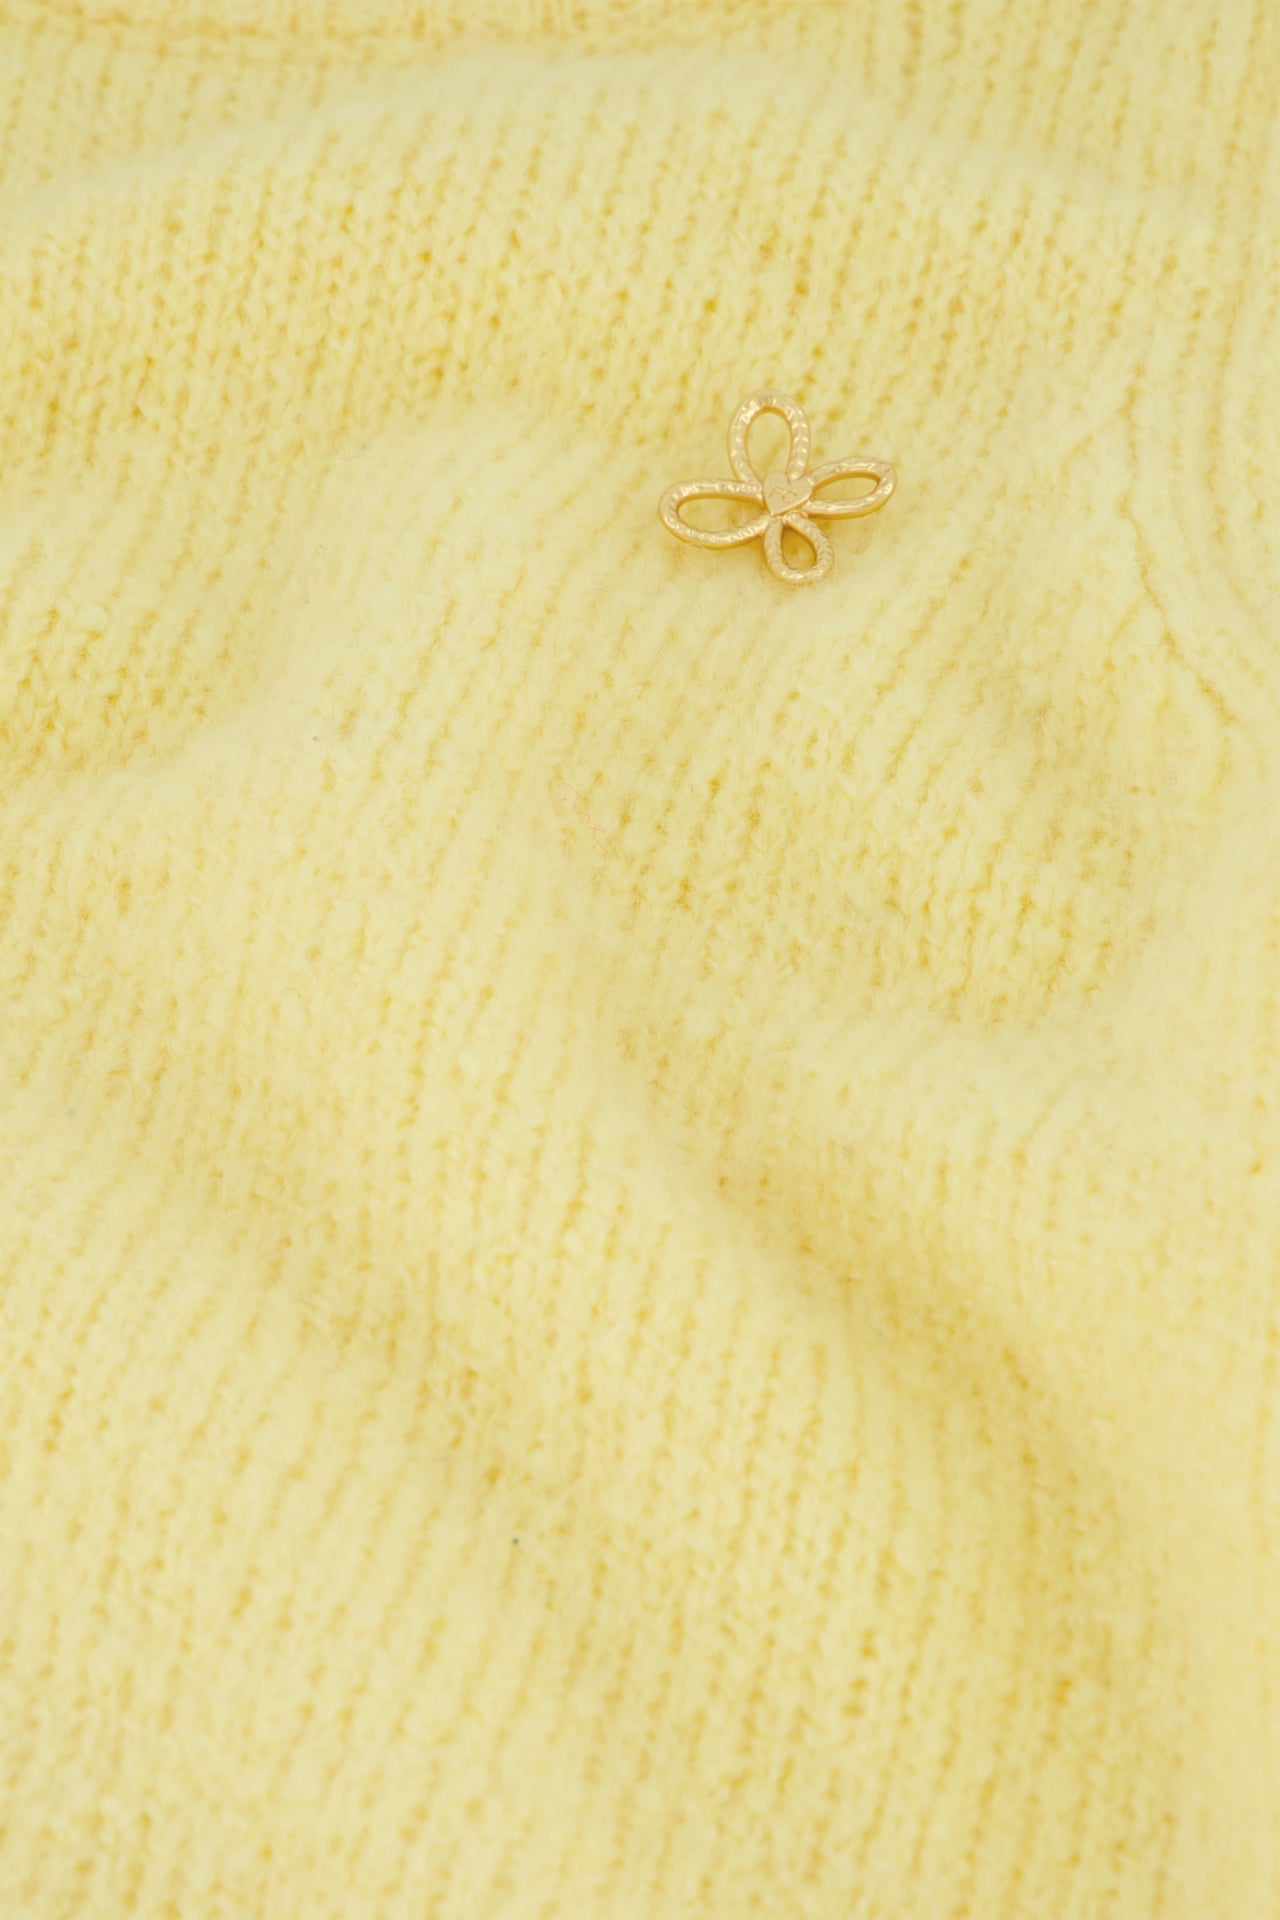 Bibian Pullover | Lemon Sorbet